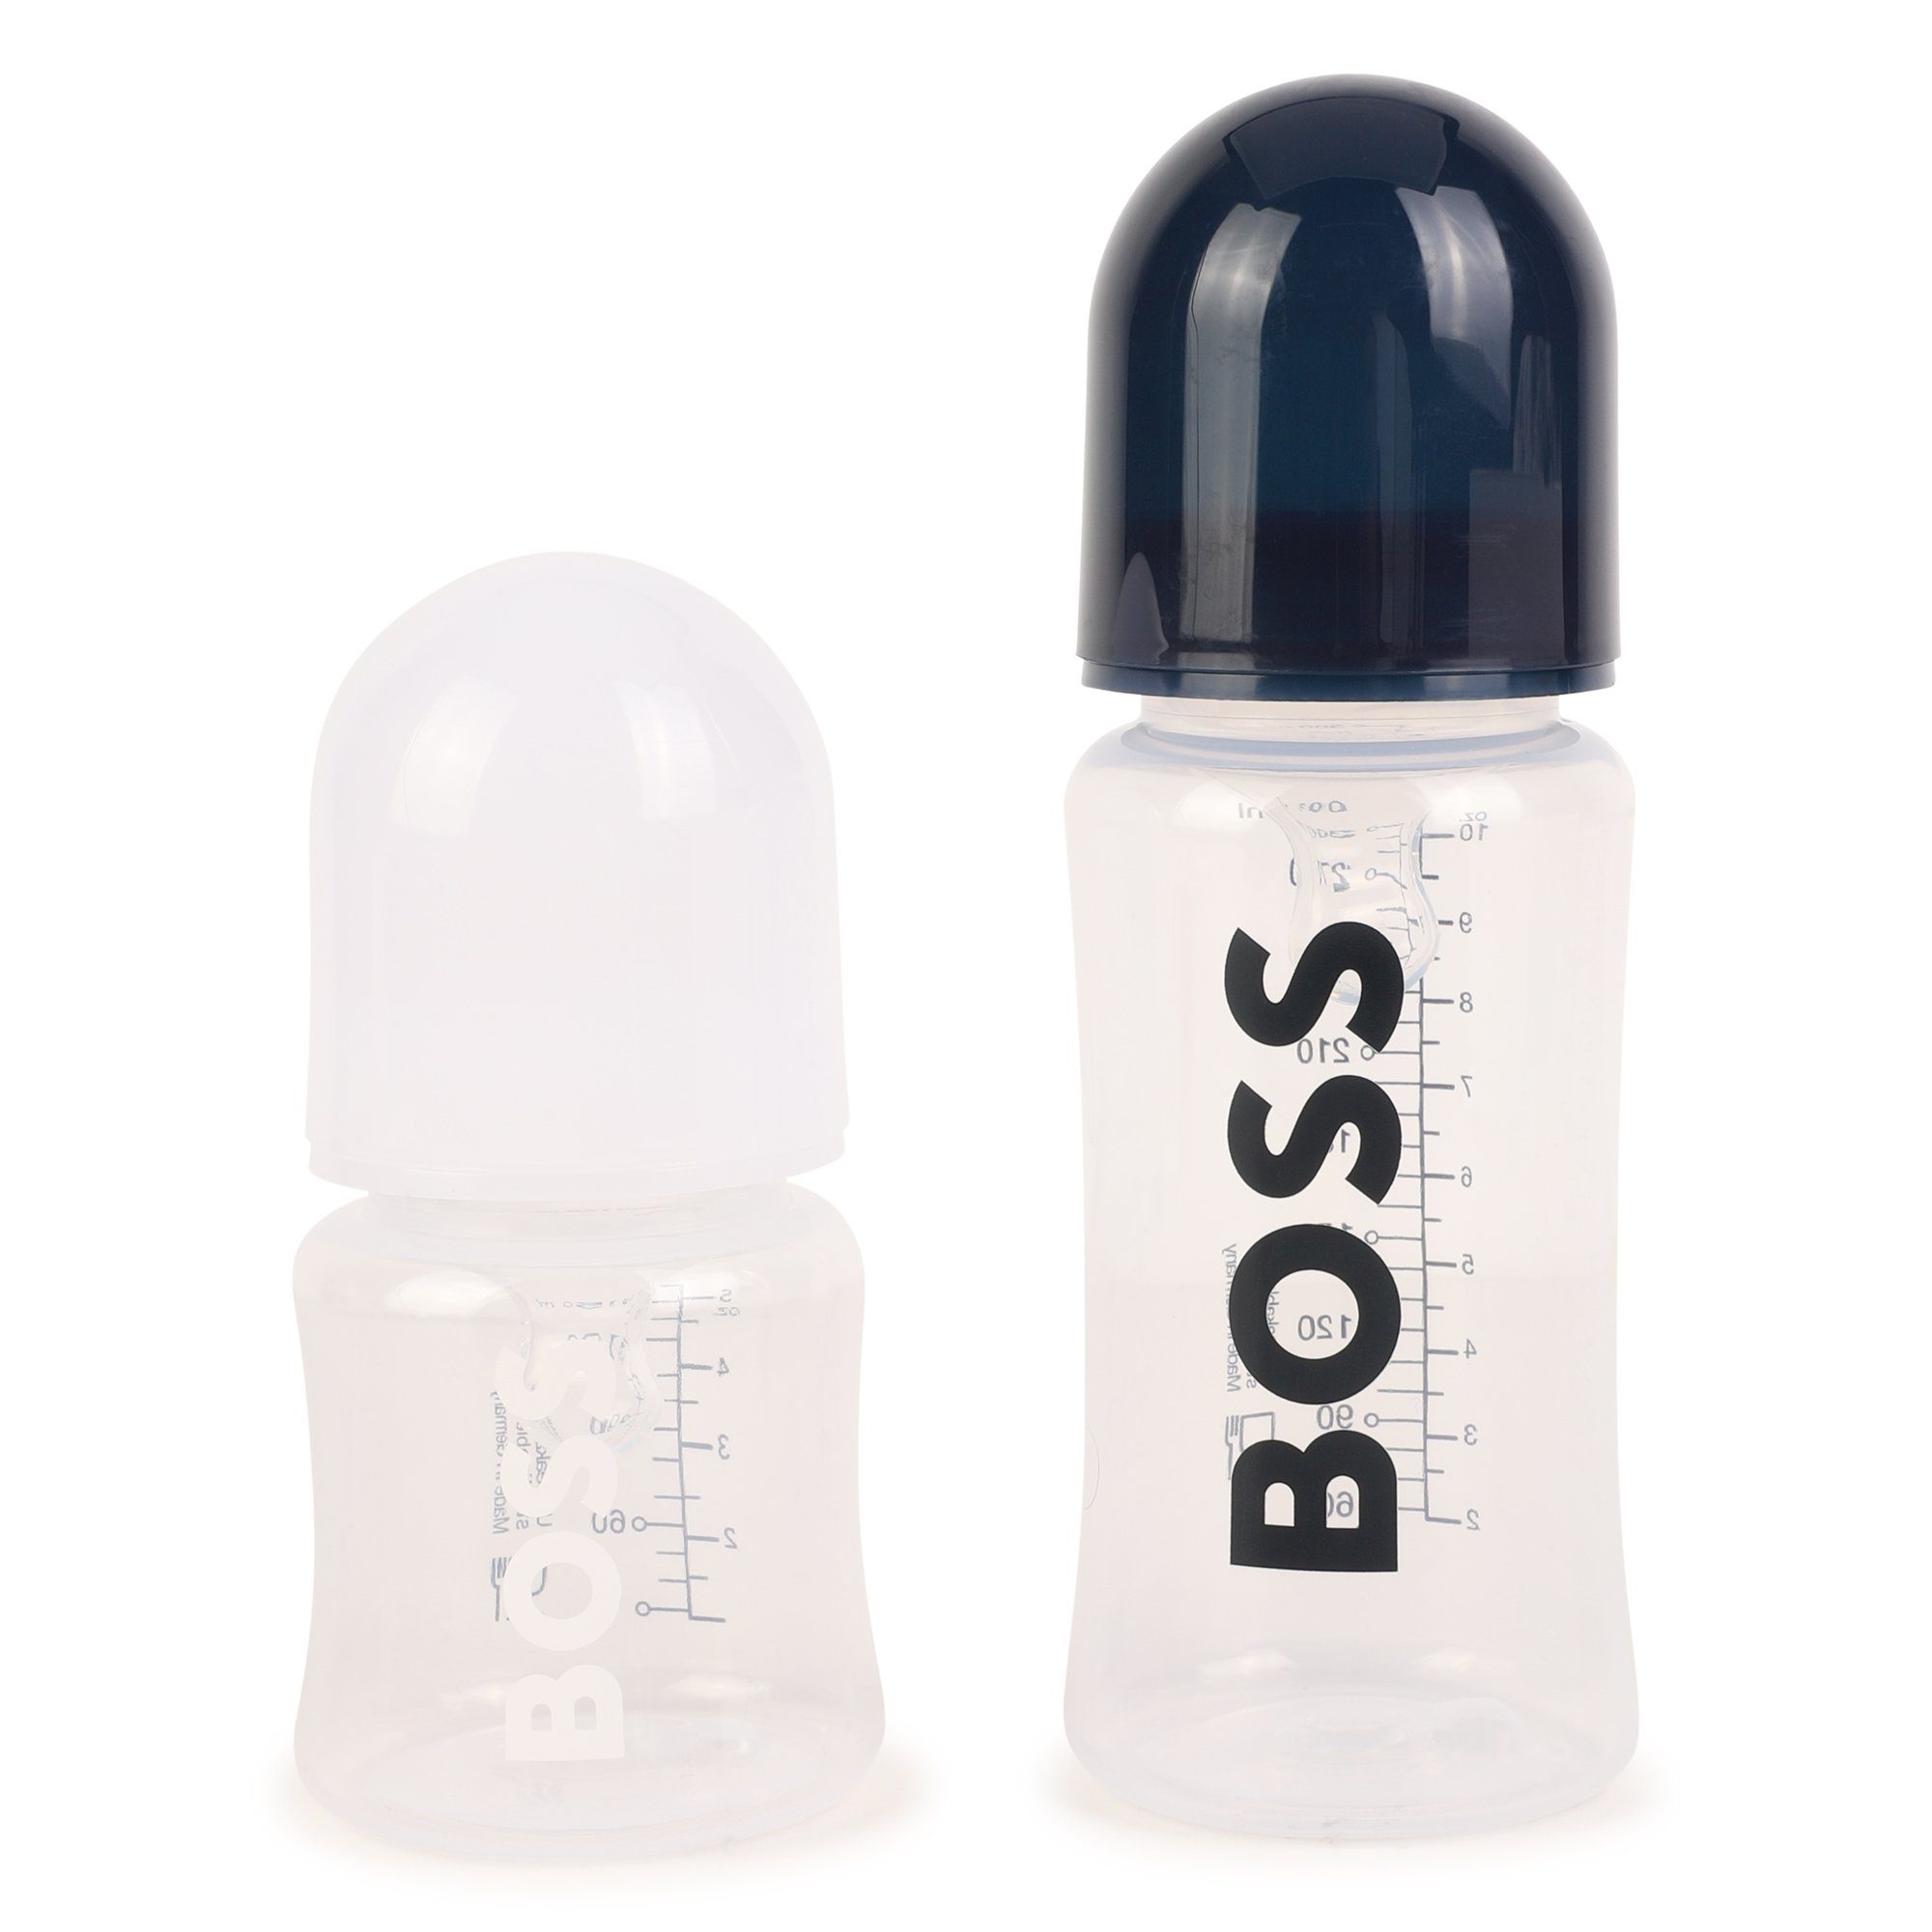 Boss Neugeborenen-Geschenkset Set Flaschen Geschenkset Baby Zweierpack BOSS im